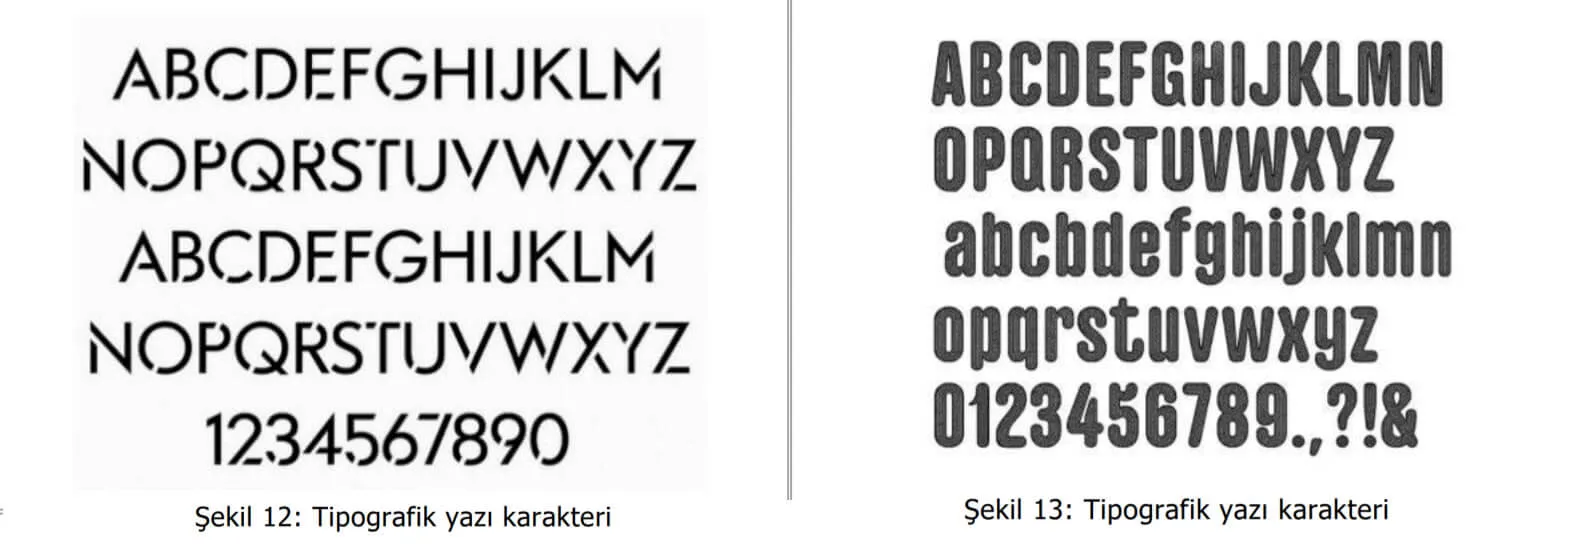 tipografik yazı karakter örnekleri-osmaniye patent